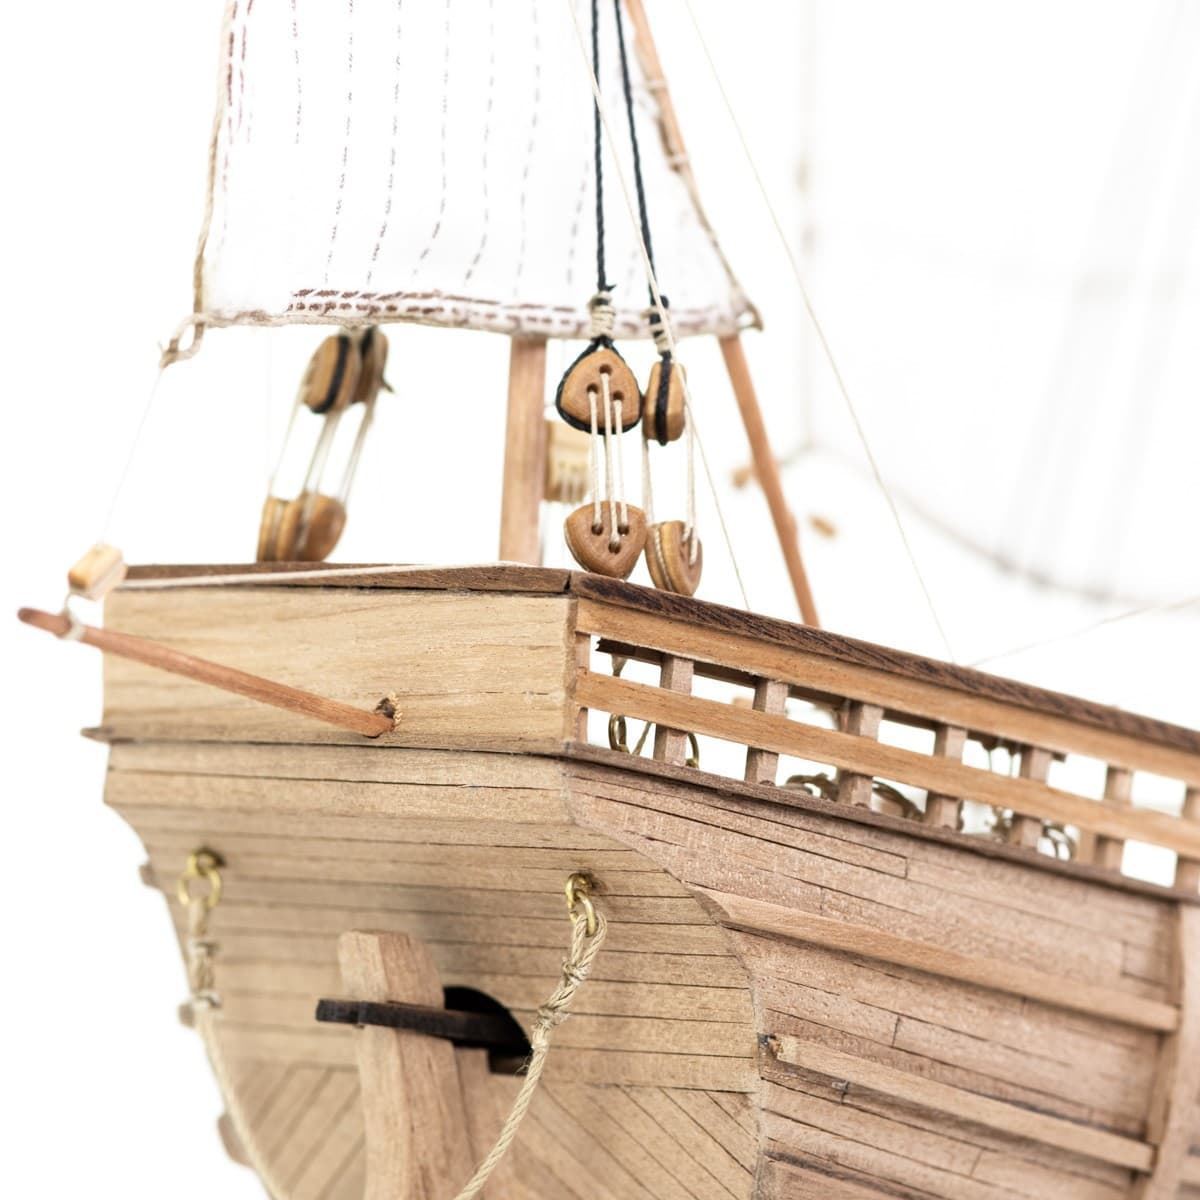 Maqueta barco de madera: Carabela Pinta - Imagen 10